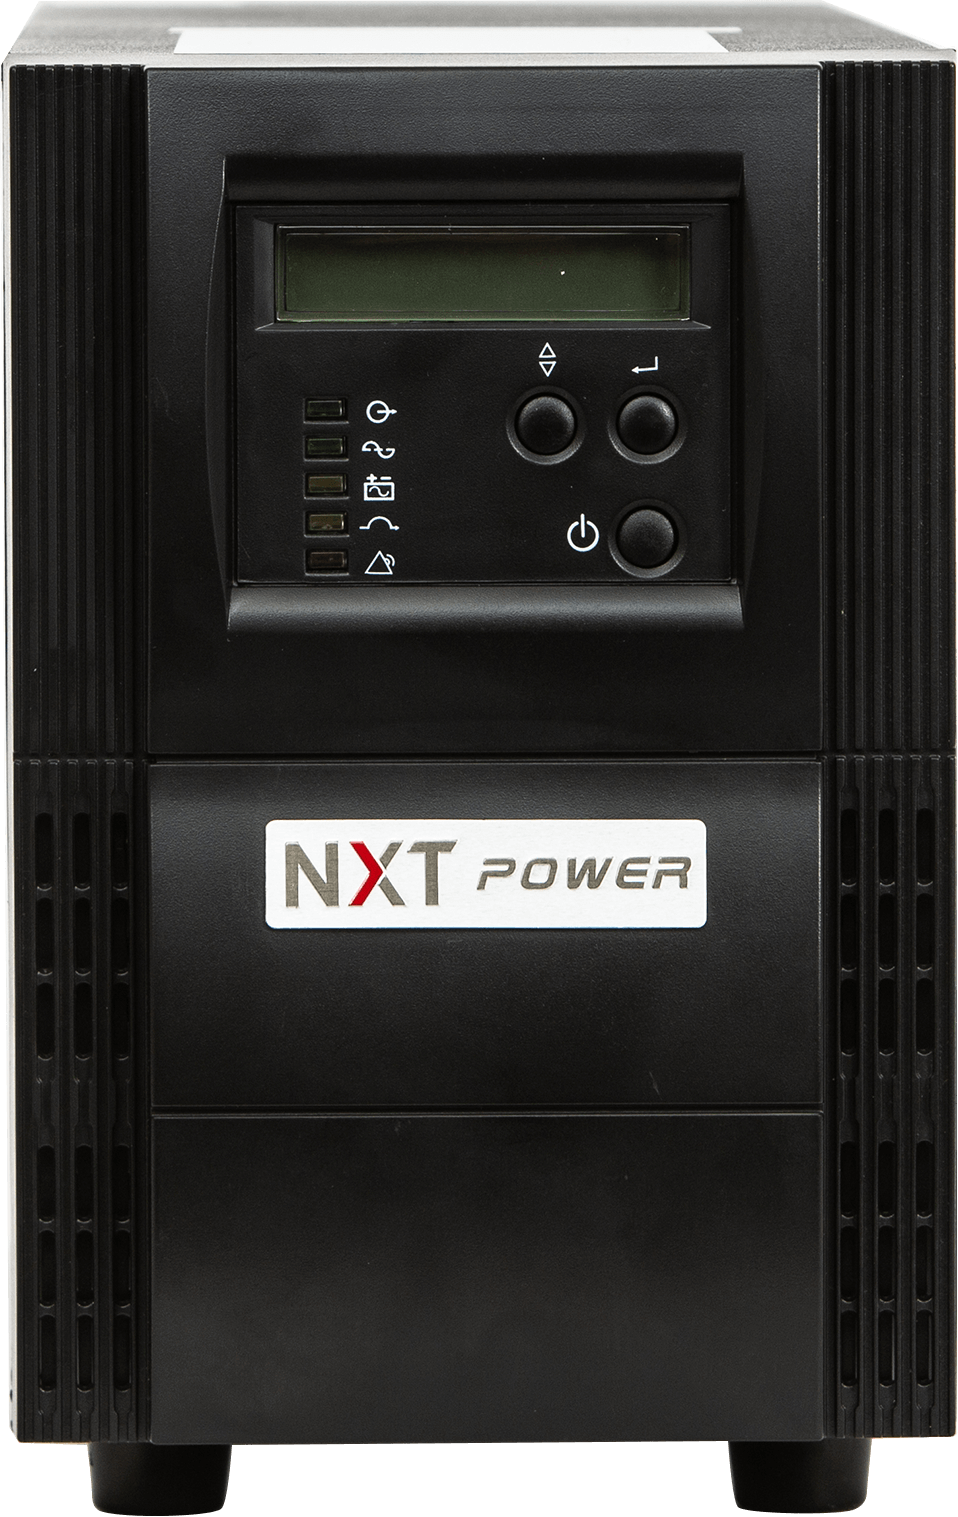 Front View - NXT Power Vanguard UPS